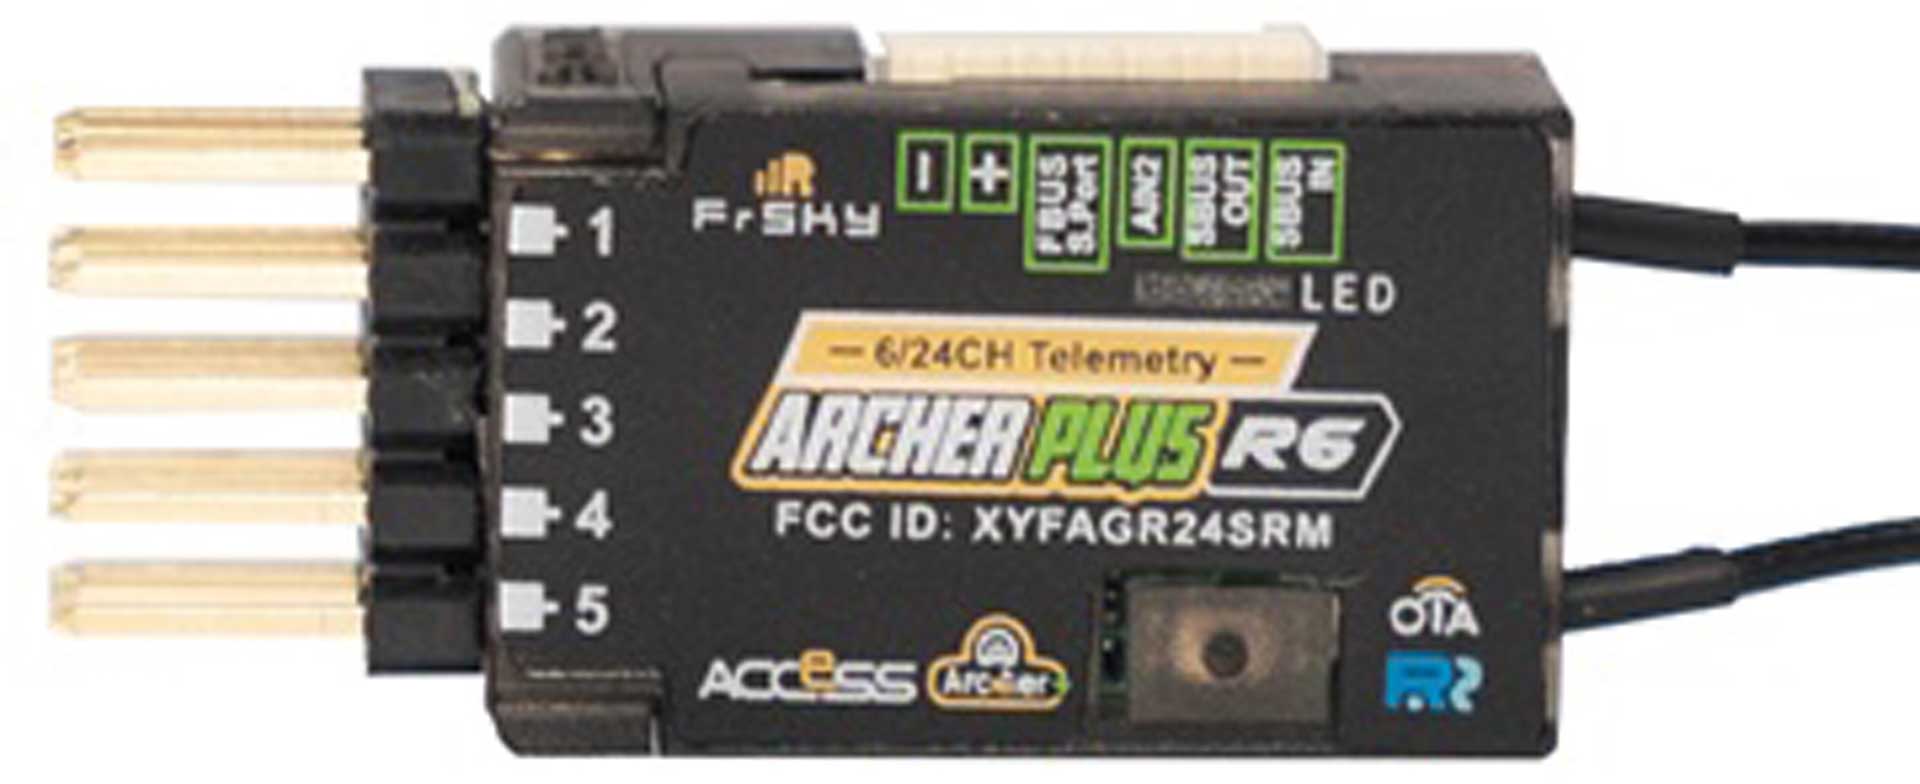 FrSky Récepteur Archer Plus R6 2,4Ghz